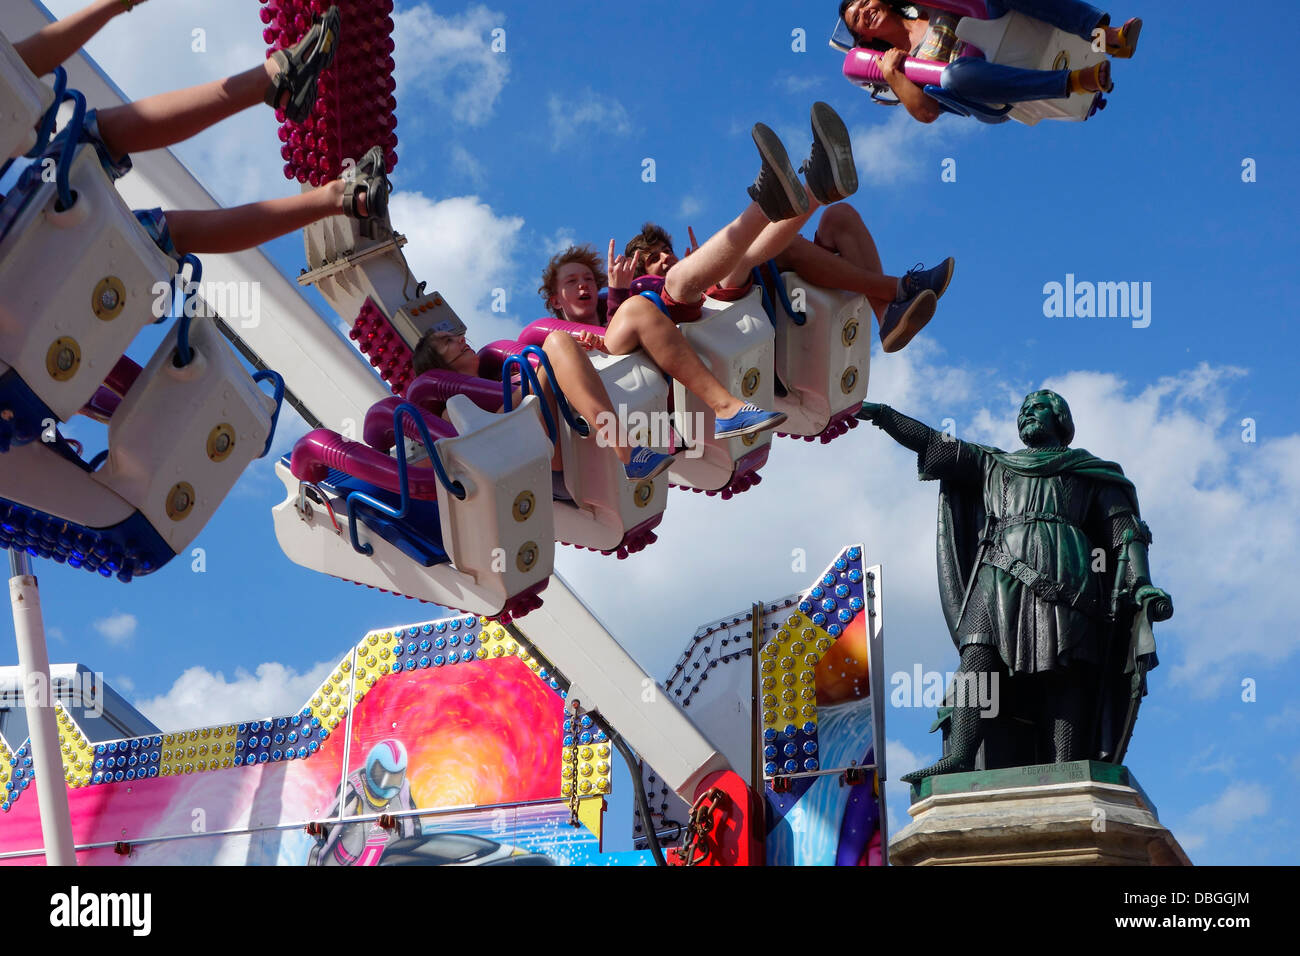 Jahrmarktsattraktion G-Force auf Reisen Jahrmarkt / Kirmes Reisen, während die Gentse Feesten / Genter Feste, Belgien Stockfoto